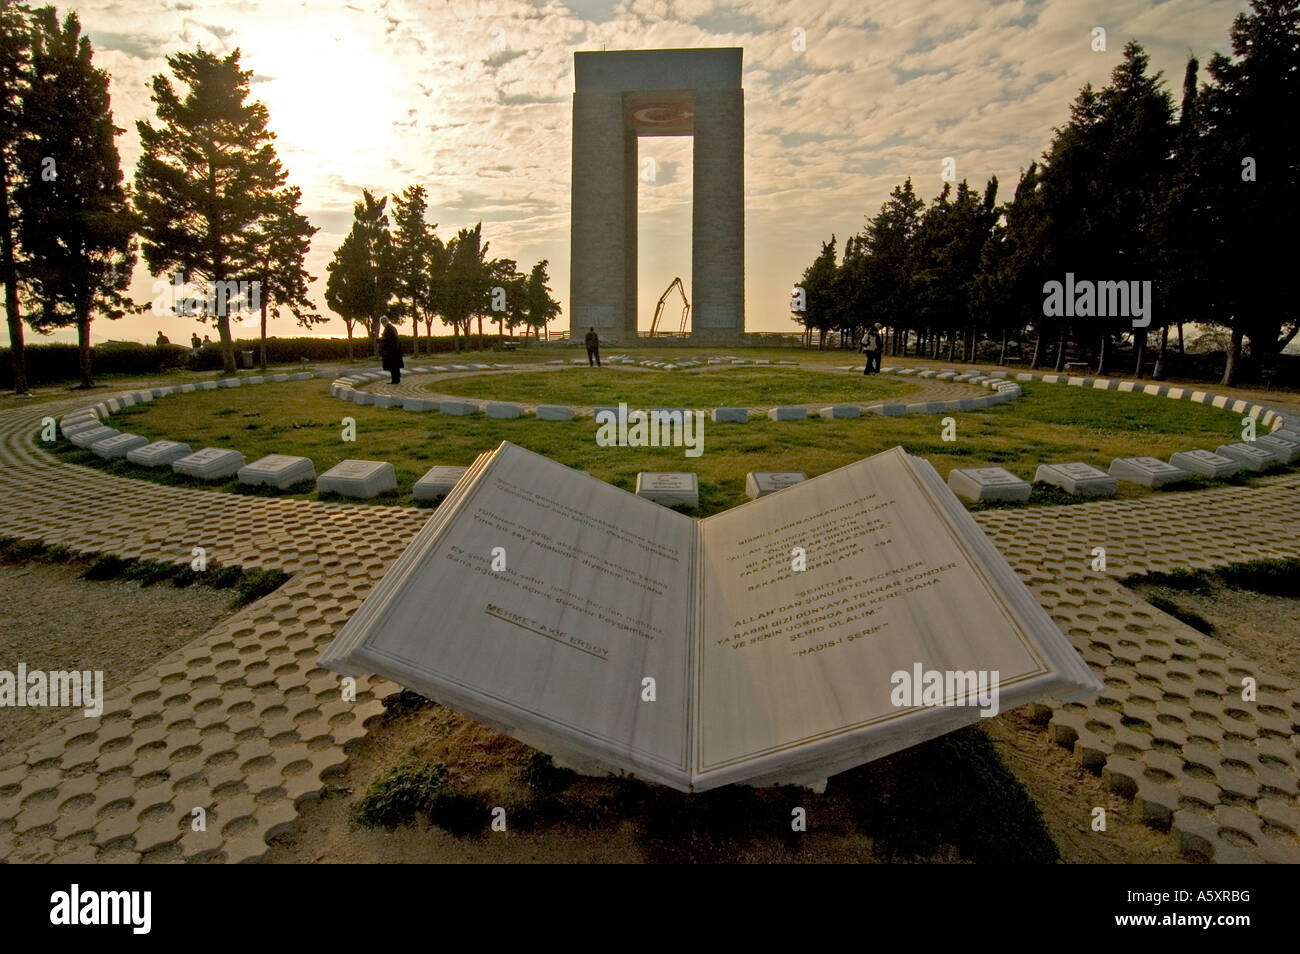 Ein Kriegerdenkmal gewidmet türkische Soldaten kämpften 1915 Gallipoli, die alliierte Invasion, Sitz in Gallipoli, Türkei Stockfoto